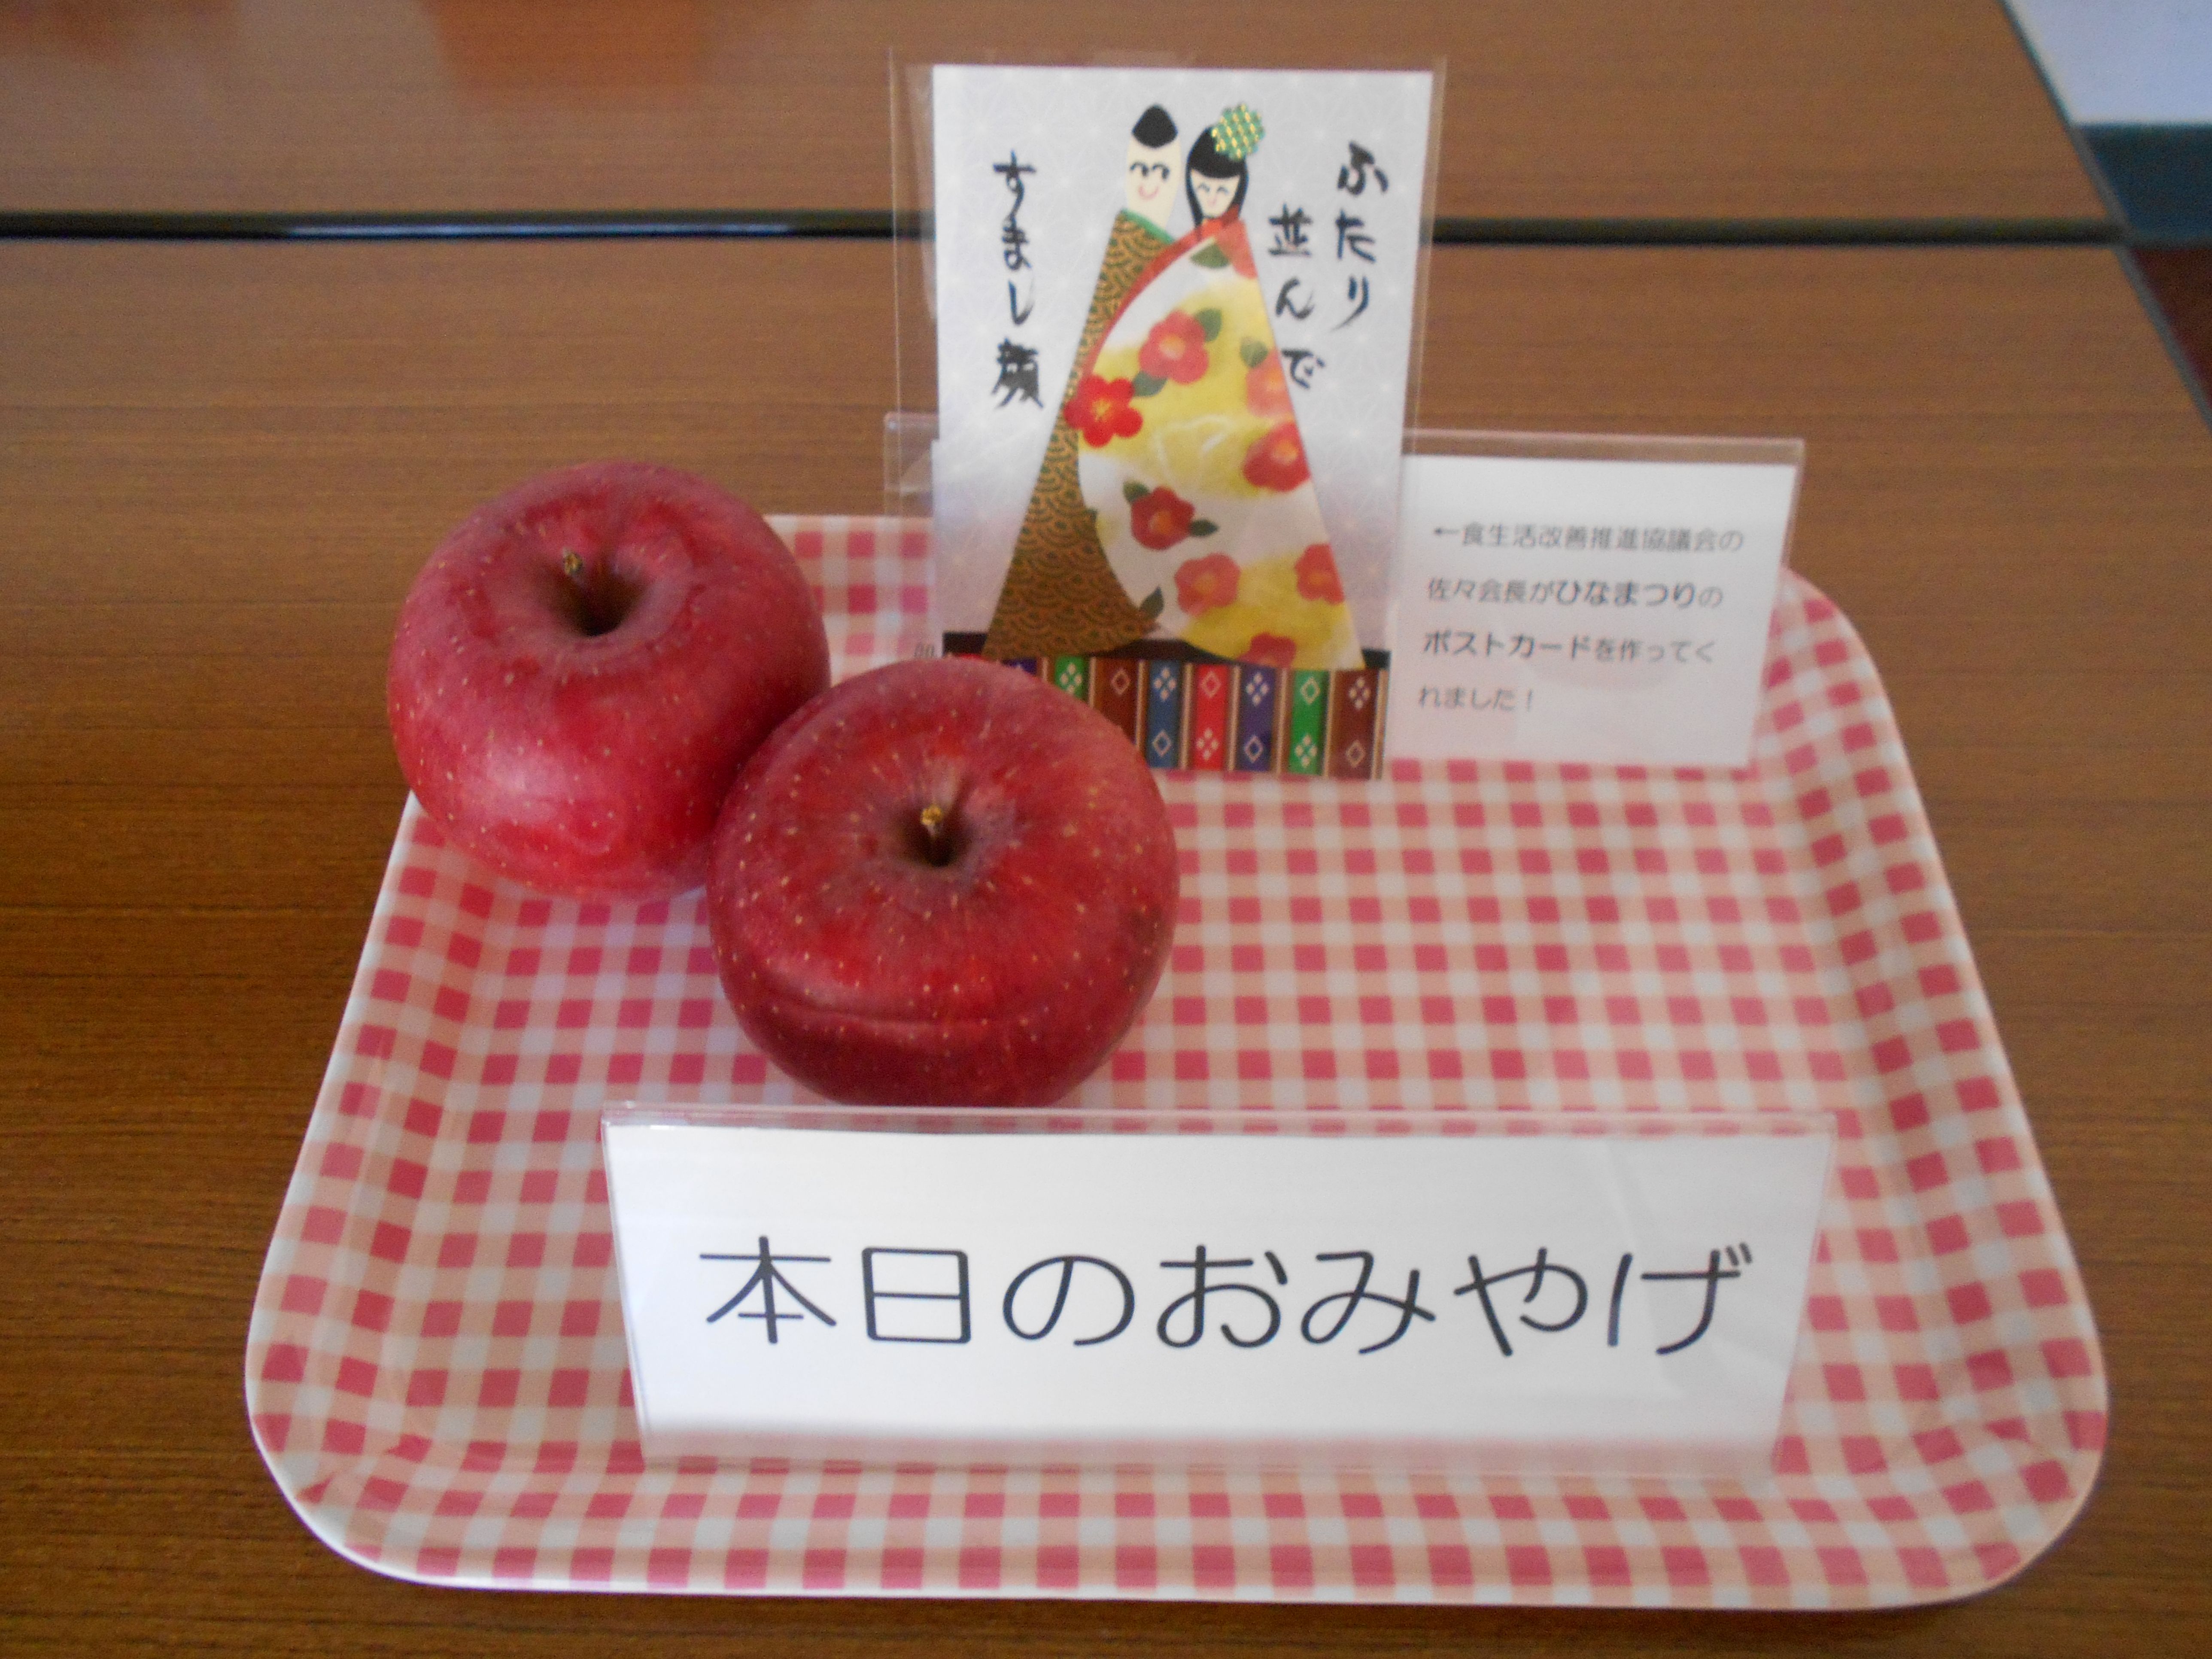 参加者のために用意したおみやげのりんごとひな祭りのポストカード